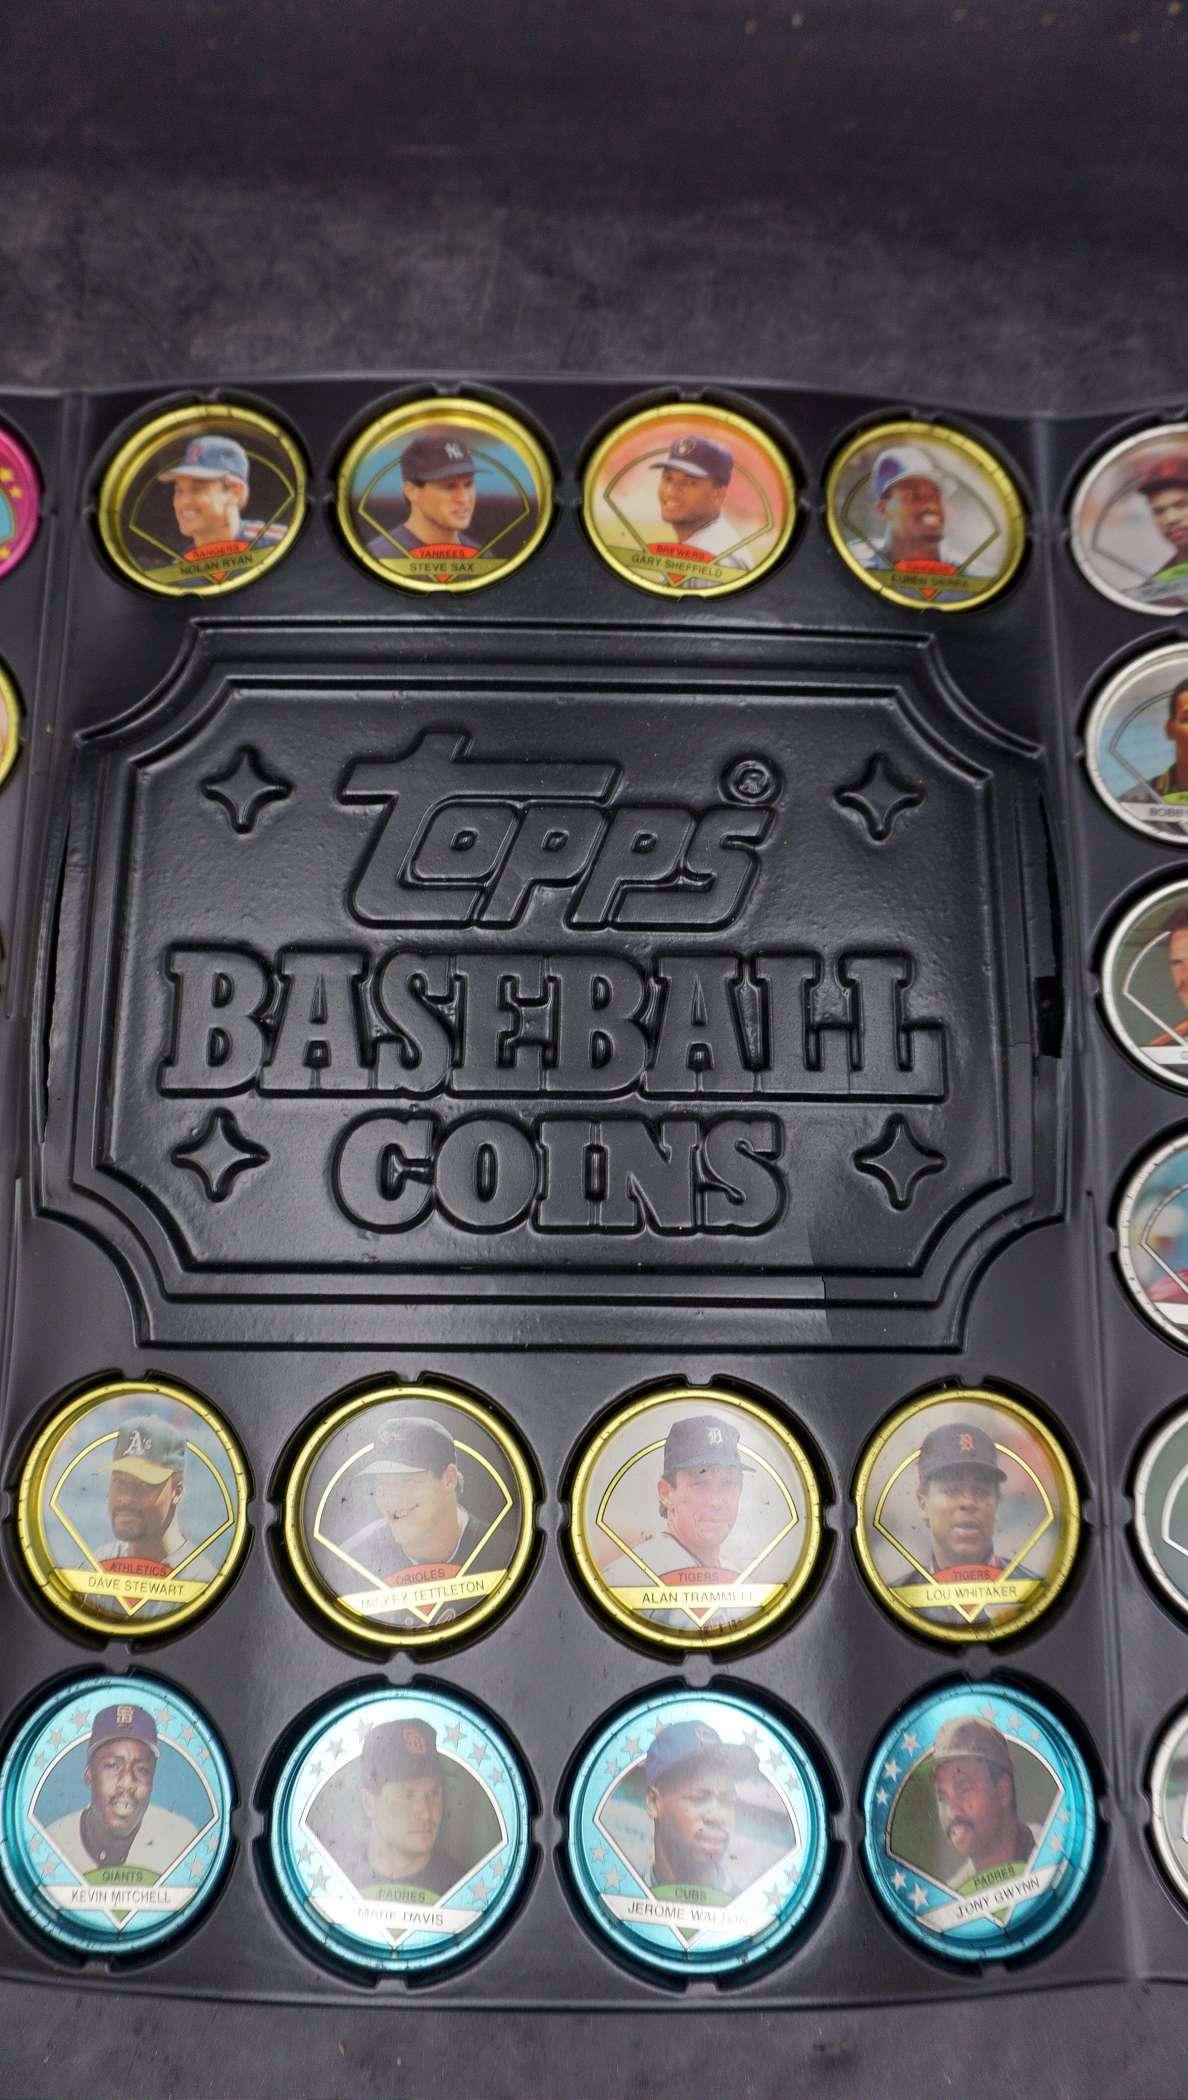 Topps Baseball Coins